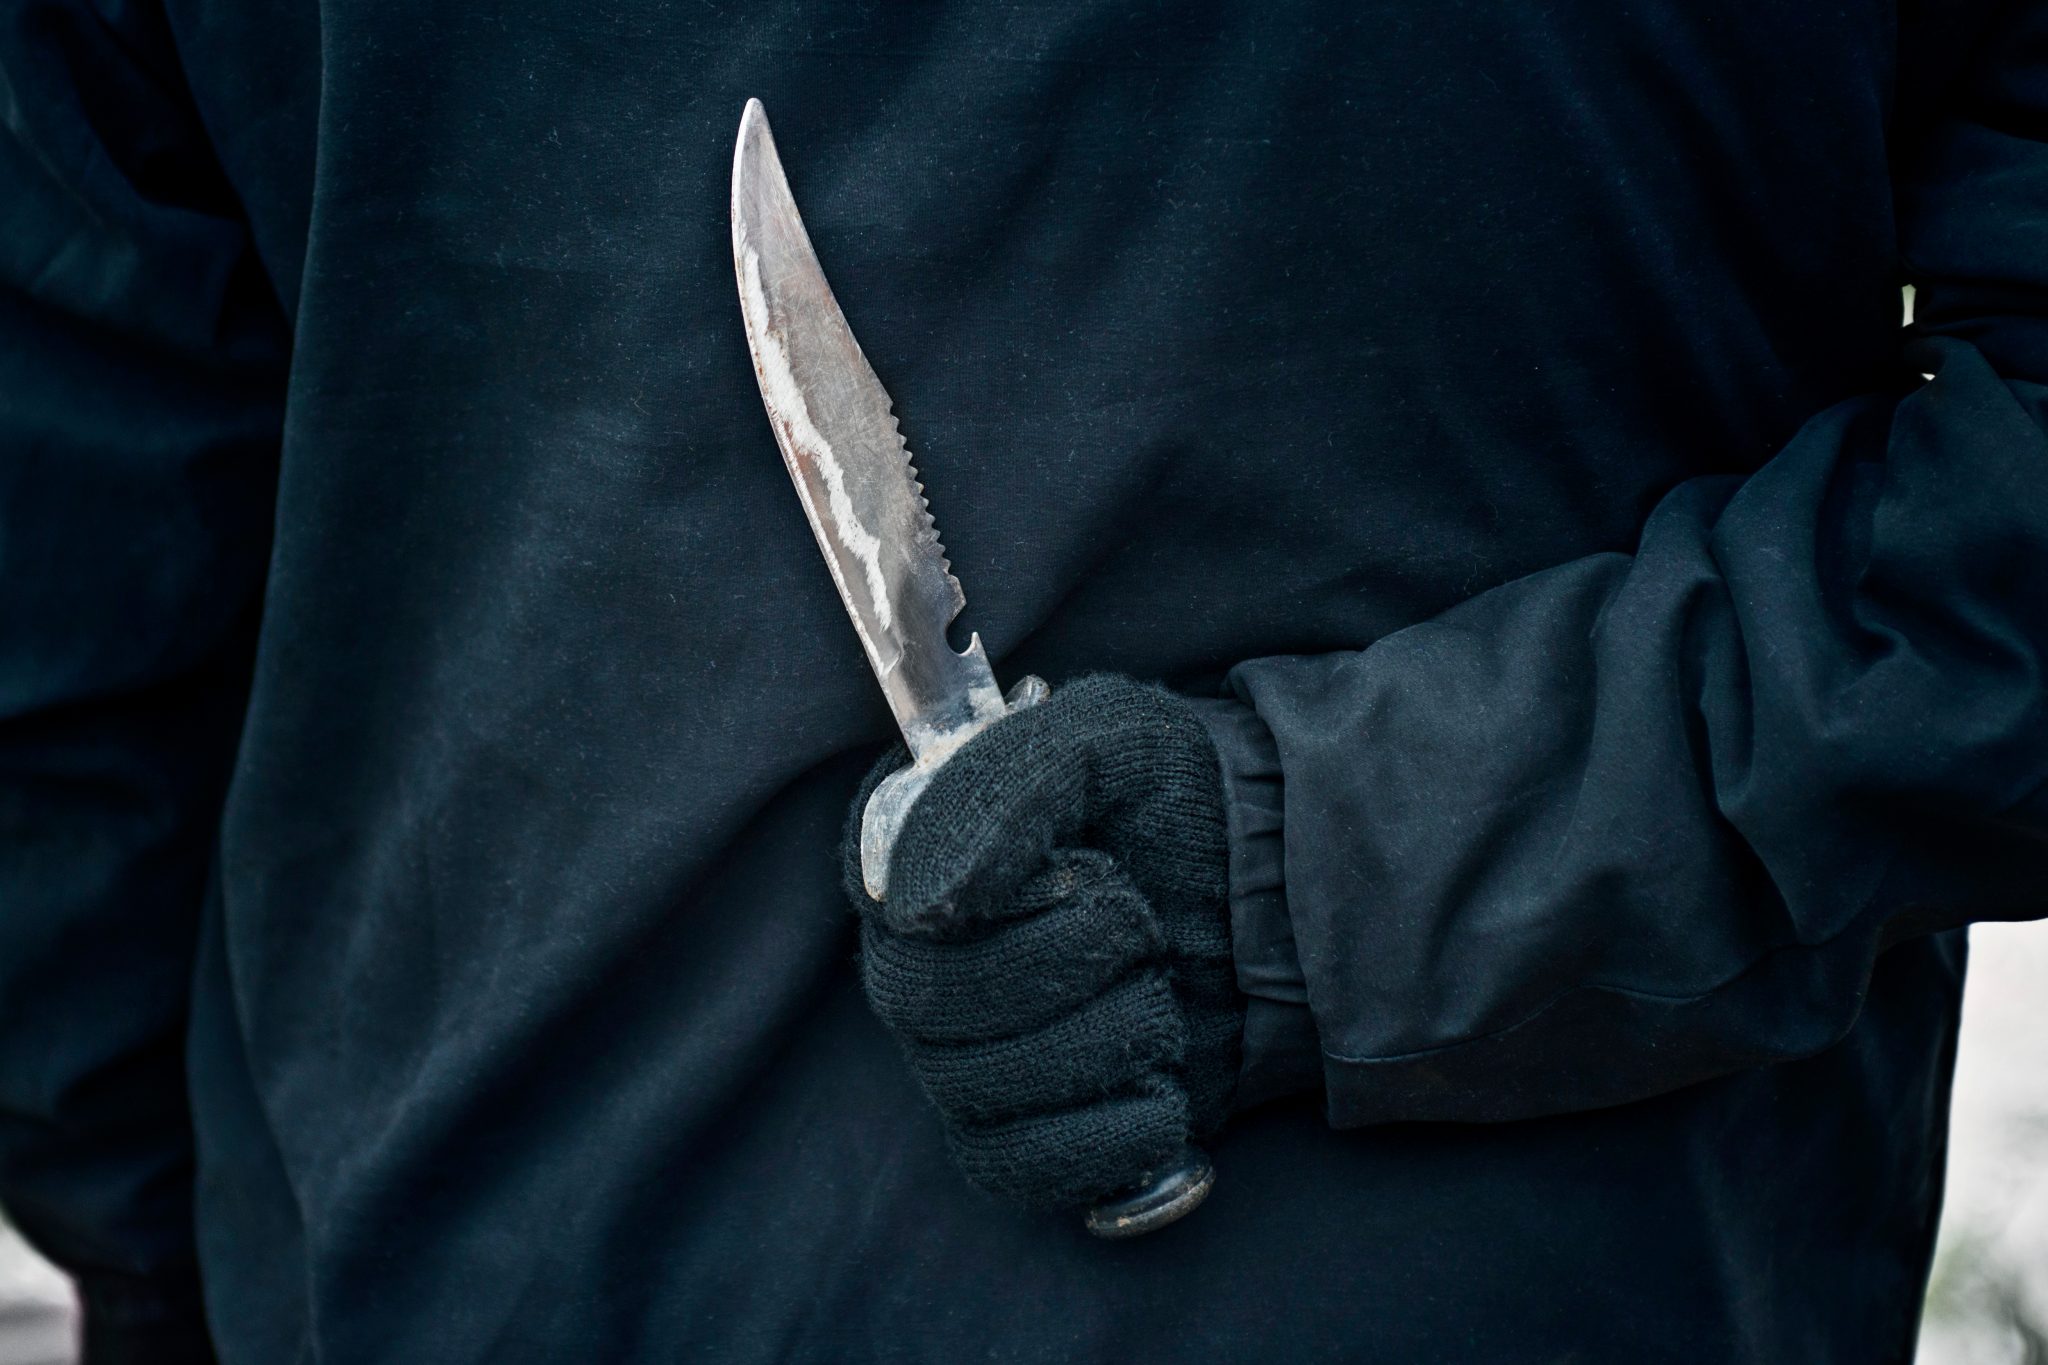 Politiet søger vidner: 35-årig mand overfaldet med kniv